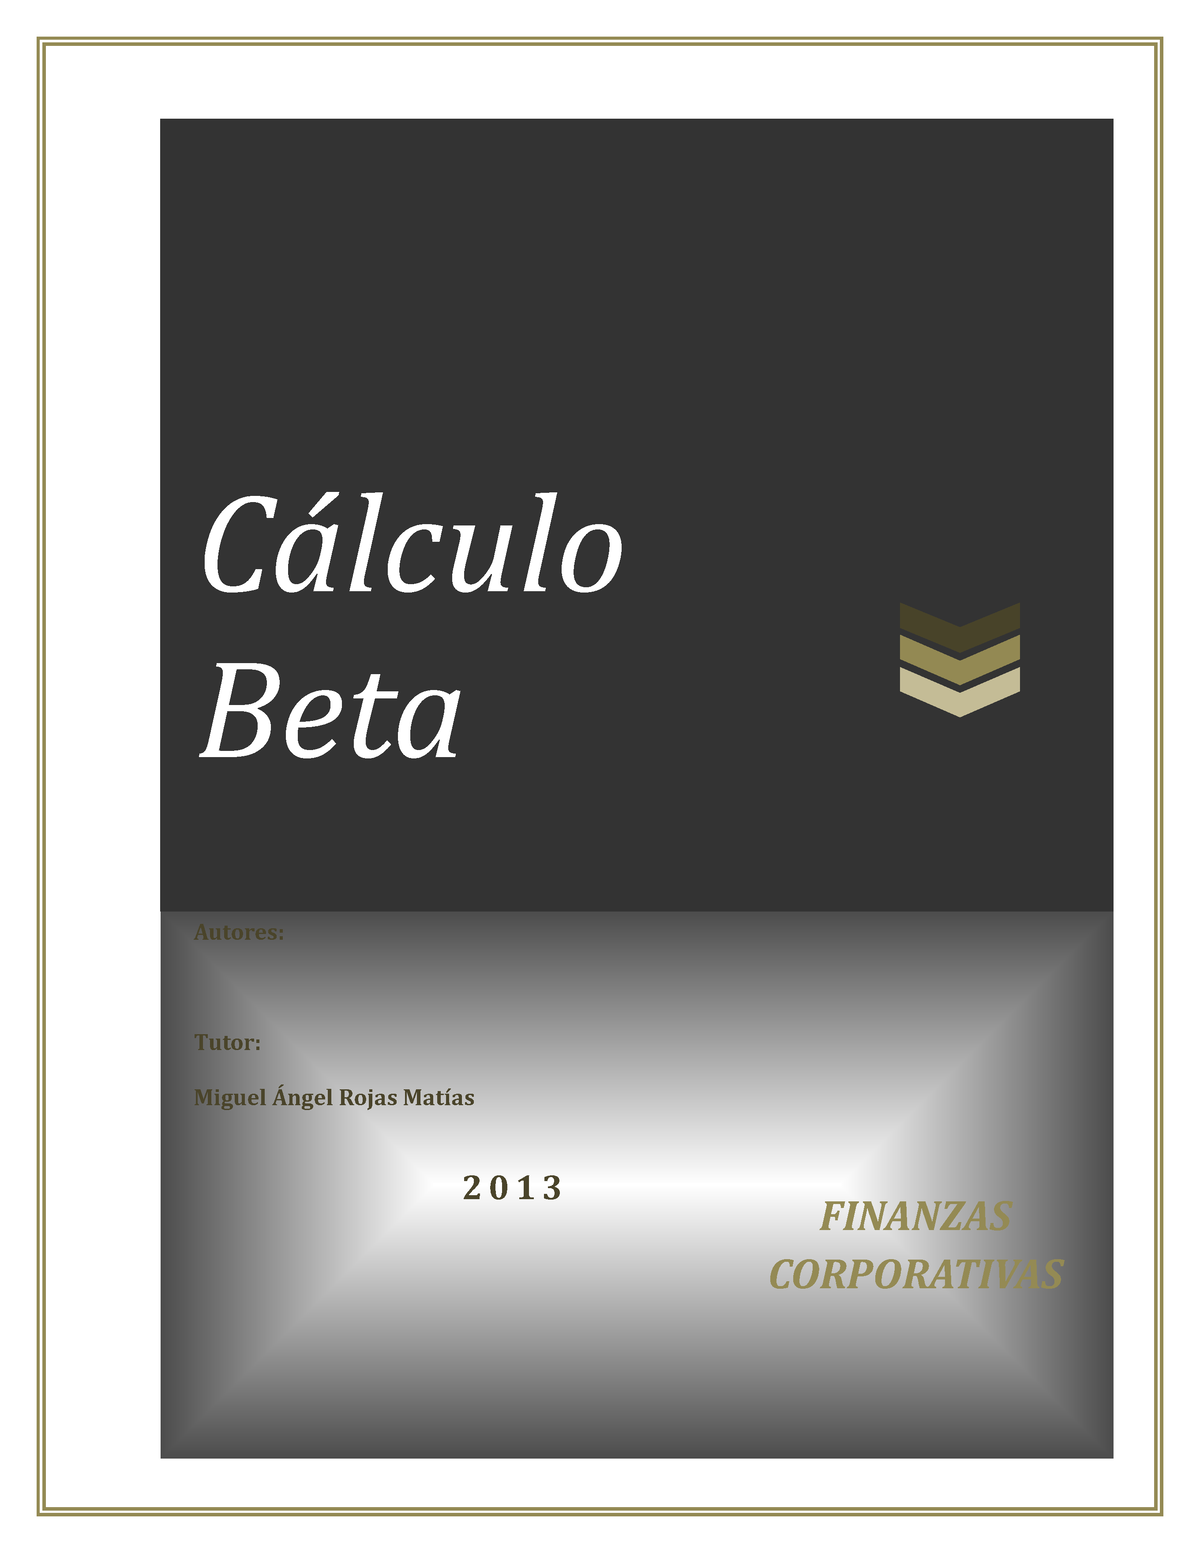 Finanzas Corporativas Calculo Beta Cálculo Beta Finanzas Corporativas Autores Tutor Miguel 4232